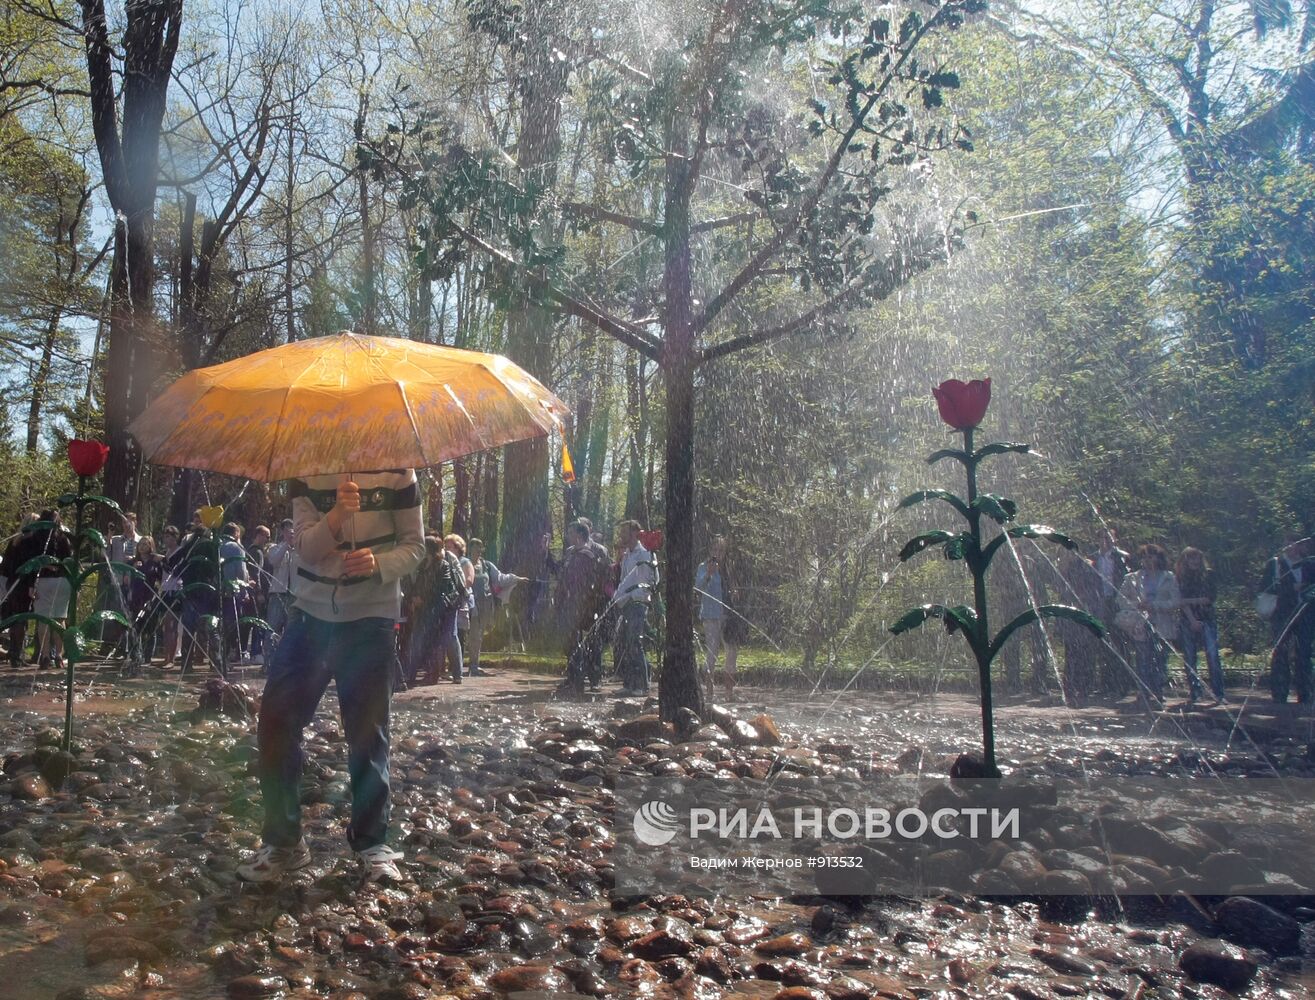 Фонтан-шутихи "Дубок" в Нижнем парке в Петергофе